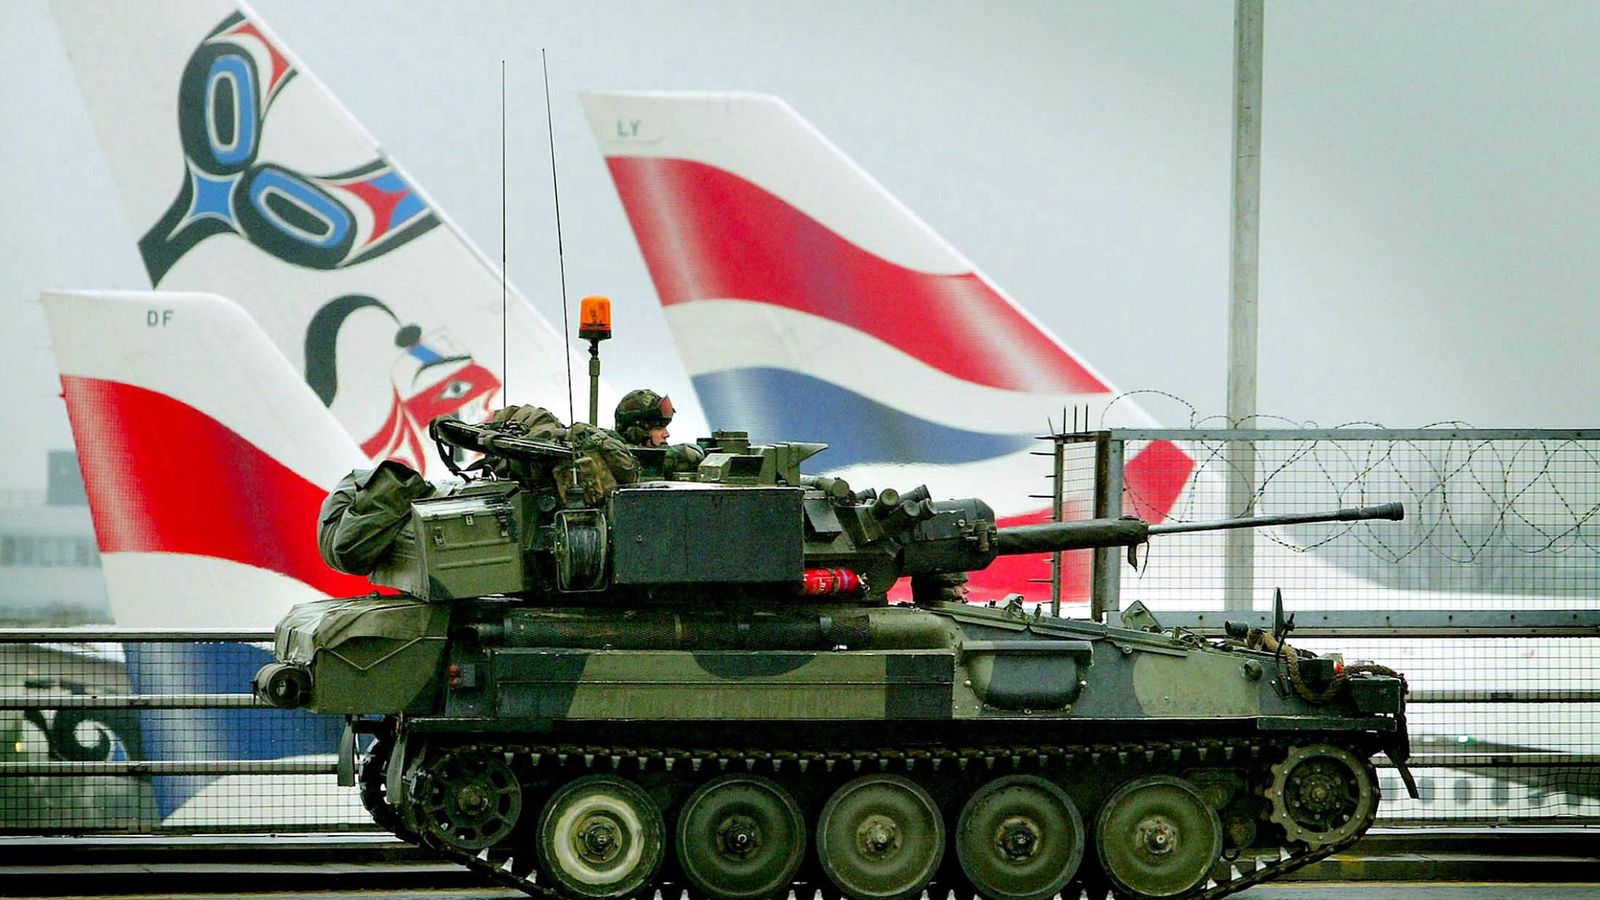 Foto: Un tanque Scimitar patrulla la Terminal 4 del Aeropuerto de Heathrow en Londres, en 2003 (Reuters)